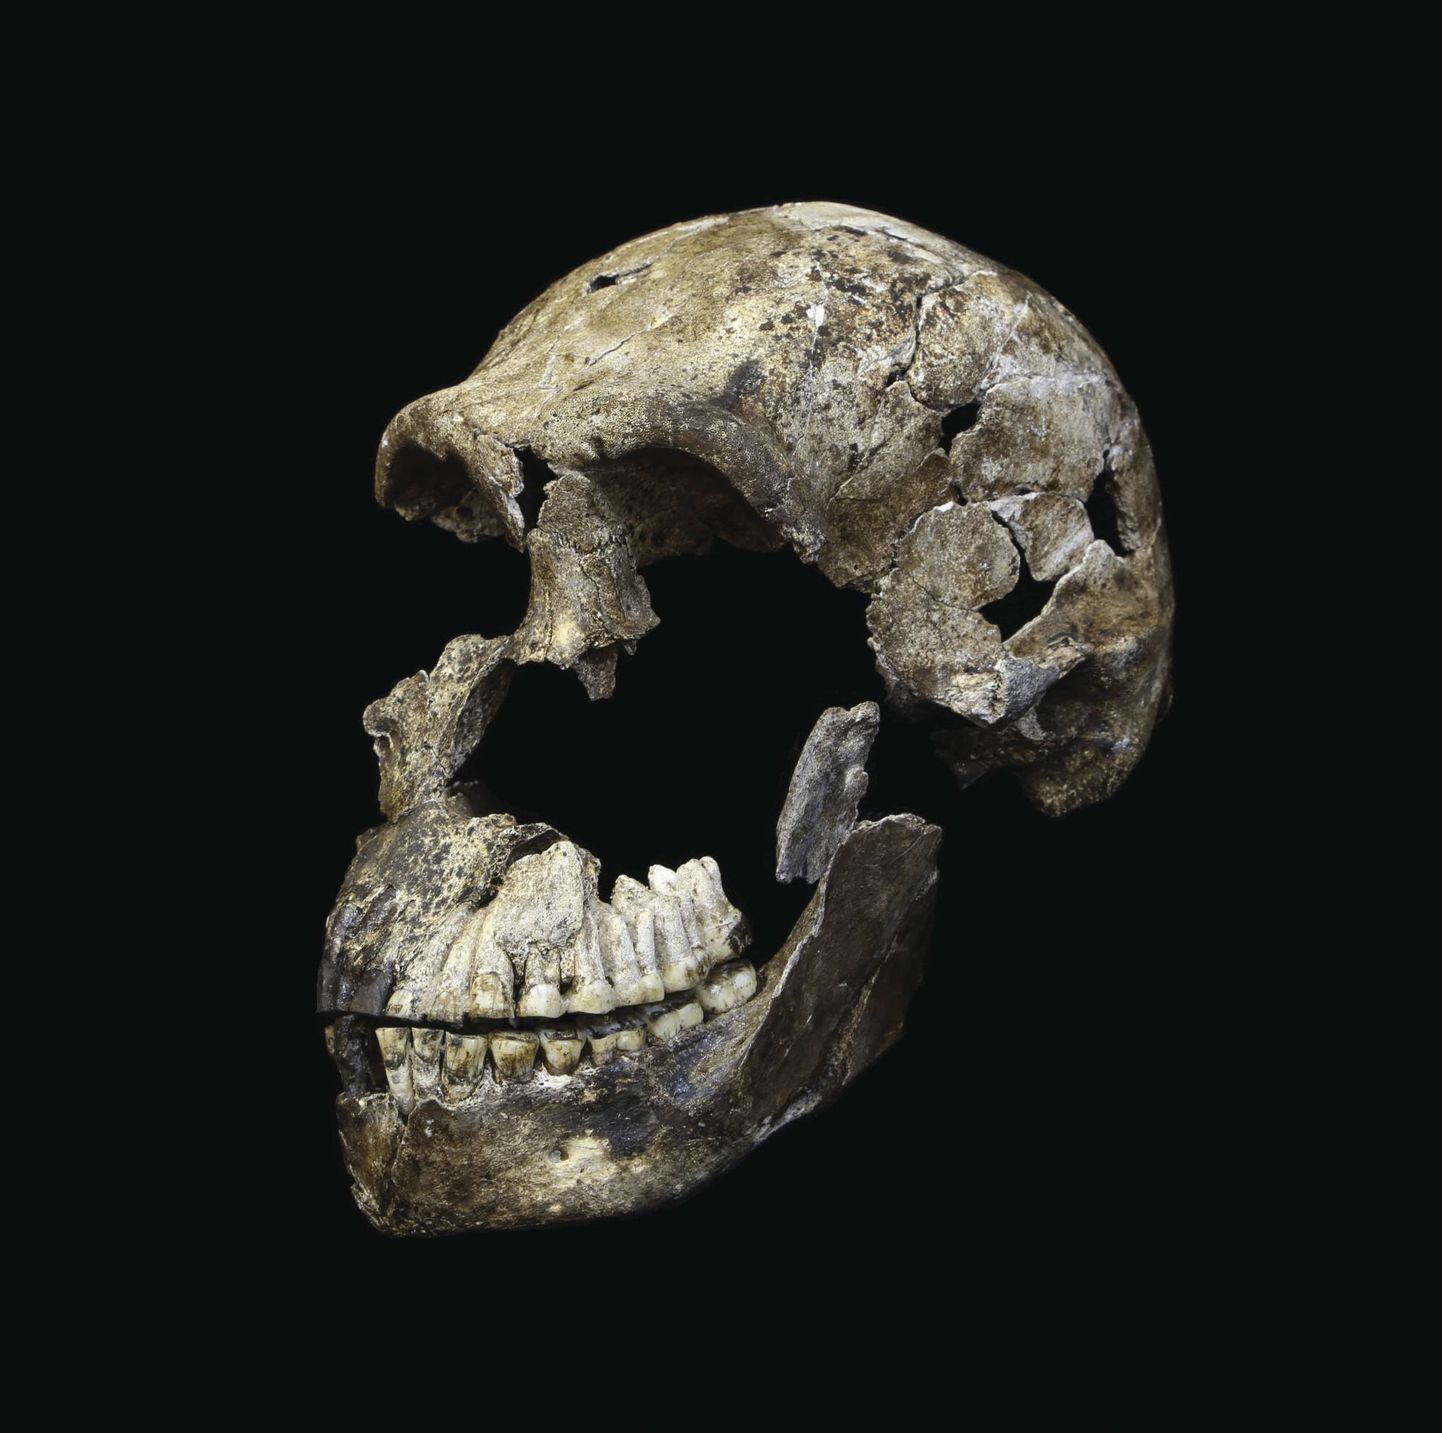 Lõuna-Aafrikaste leitud Homo naledi osaline kolp